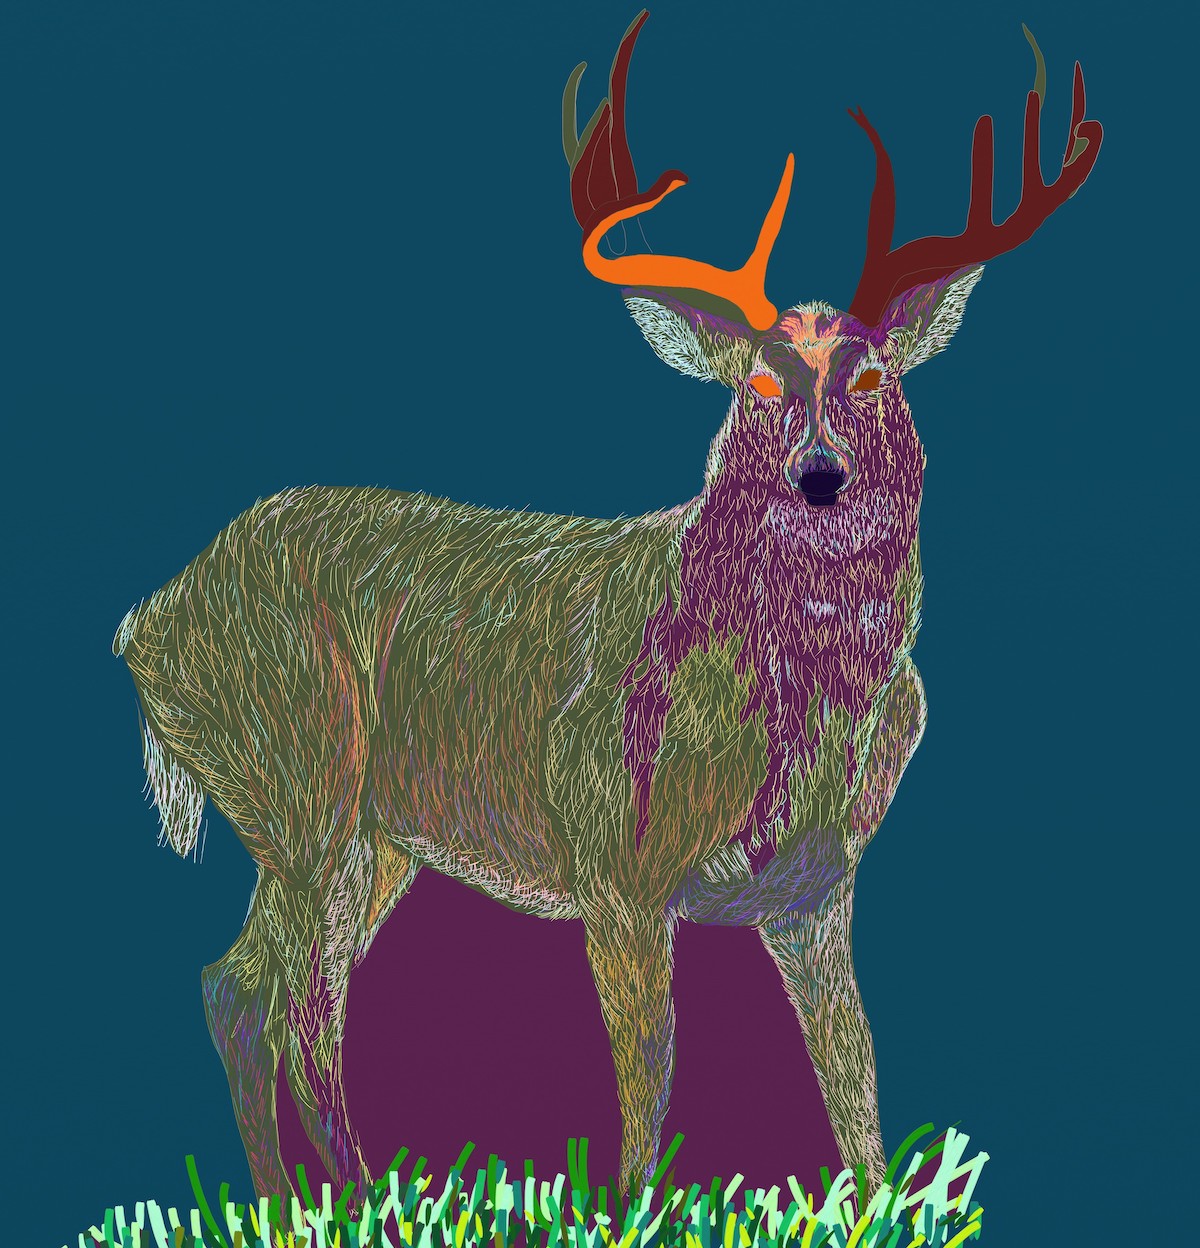 An artwork of a deer by Sonny Bean